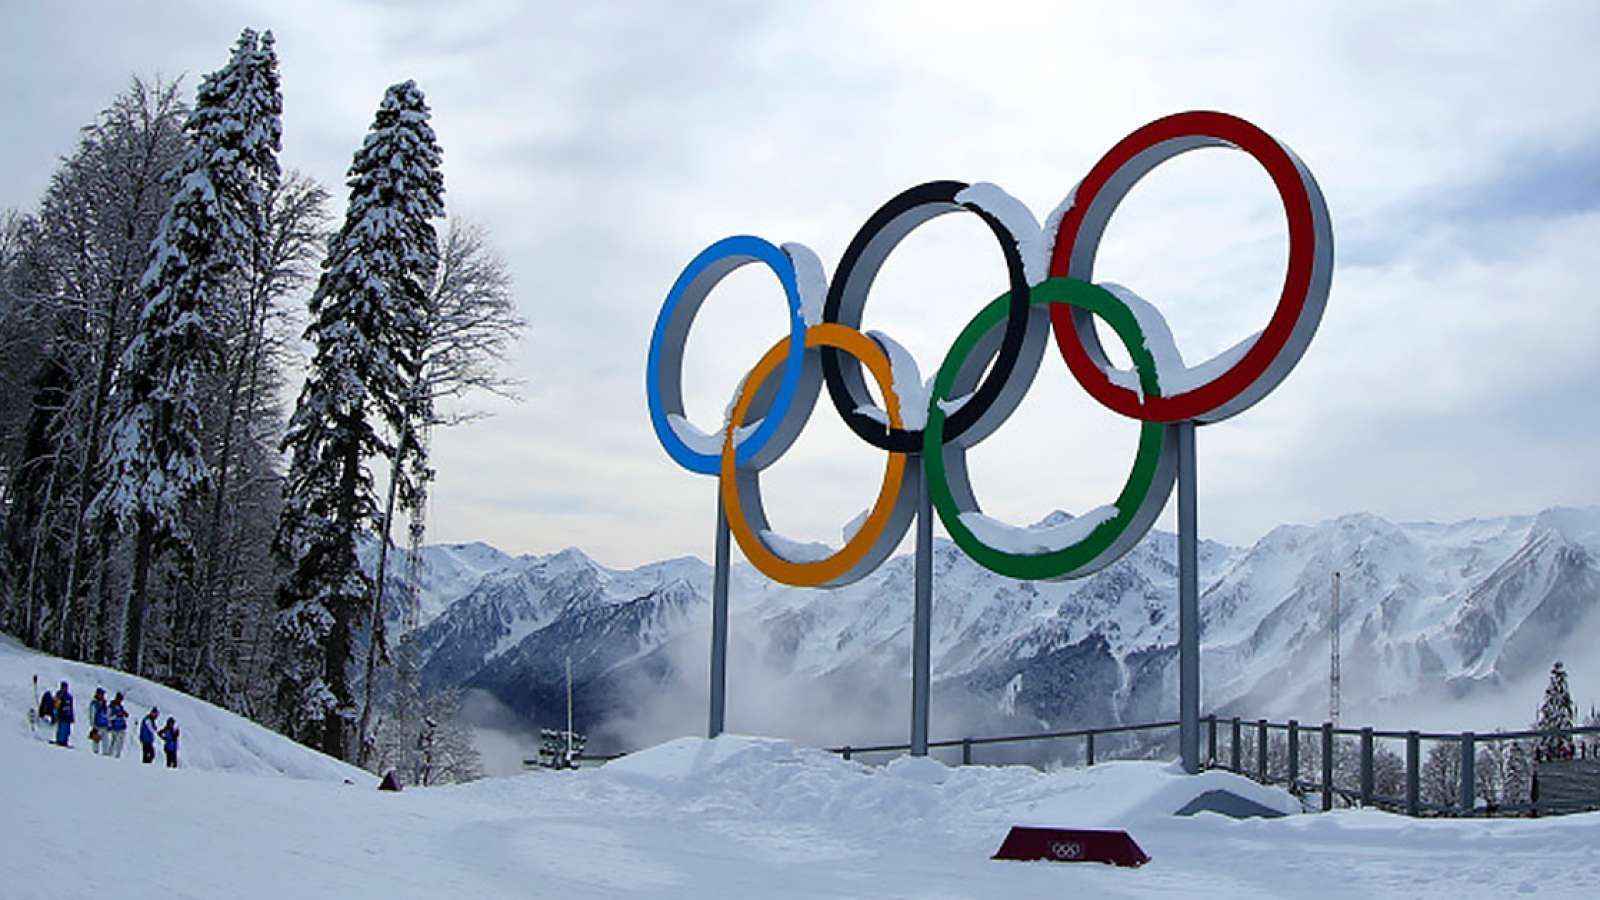 Thế vận hội mùa đông 2018 có những điểm gì thú vị?